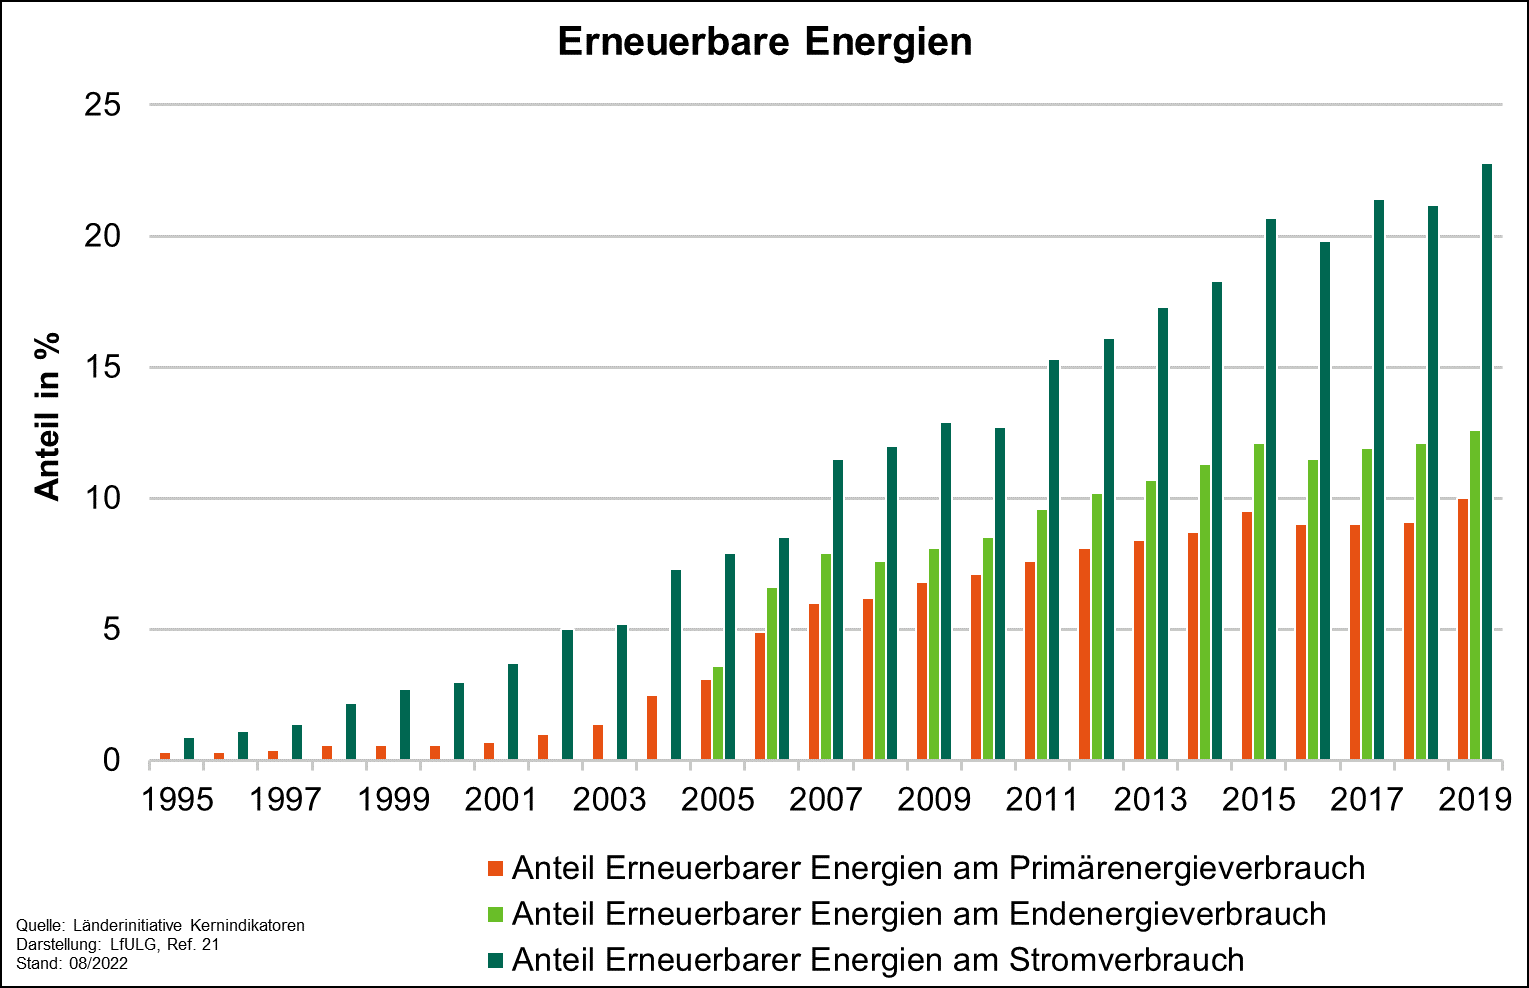 Die Grafik zeigt die Entwicklung der Anteile der erneuerbaren Energien am Stromverbrauch und am Primärenergieverbrauch von 1995 bis 2019. Der Anteil der erneuerbaren Energien am Endenergieverbrauch wird von 2005 bis 2019 dargestellt.